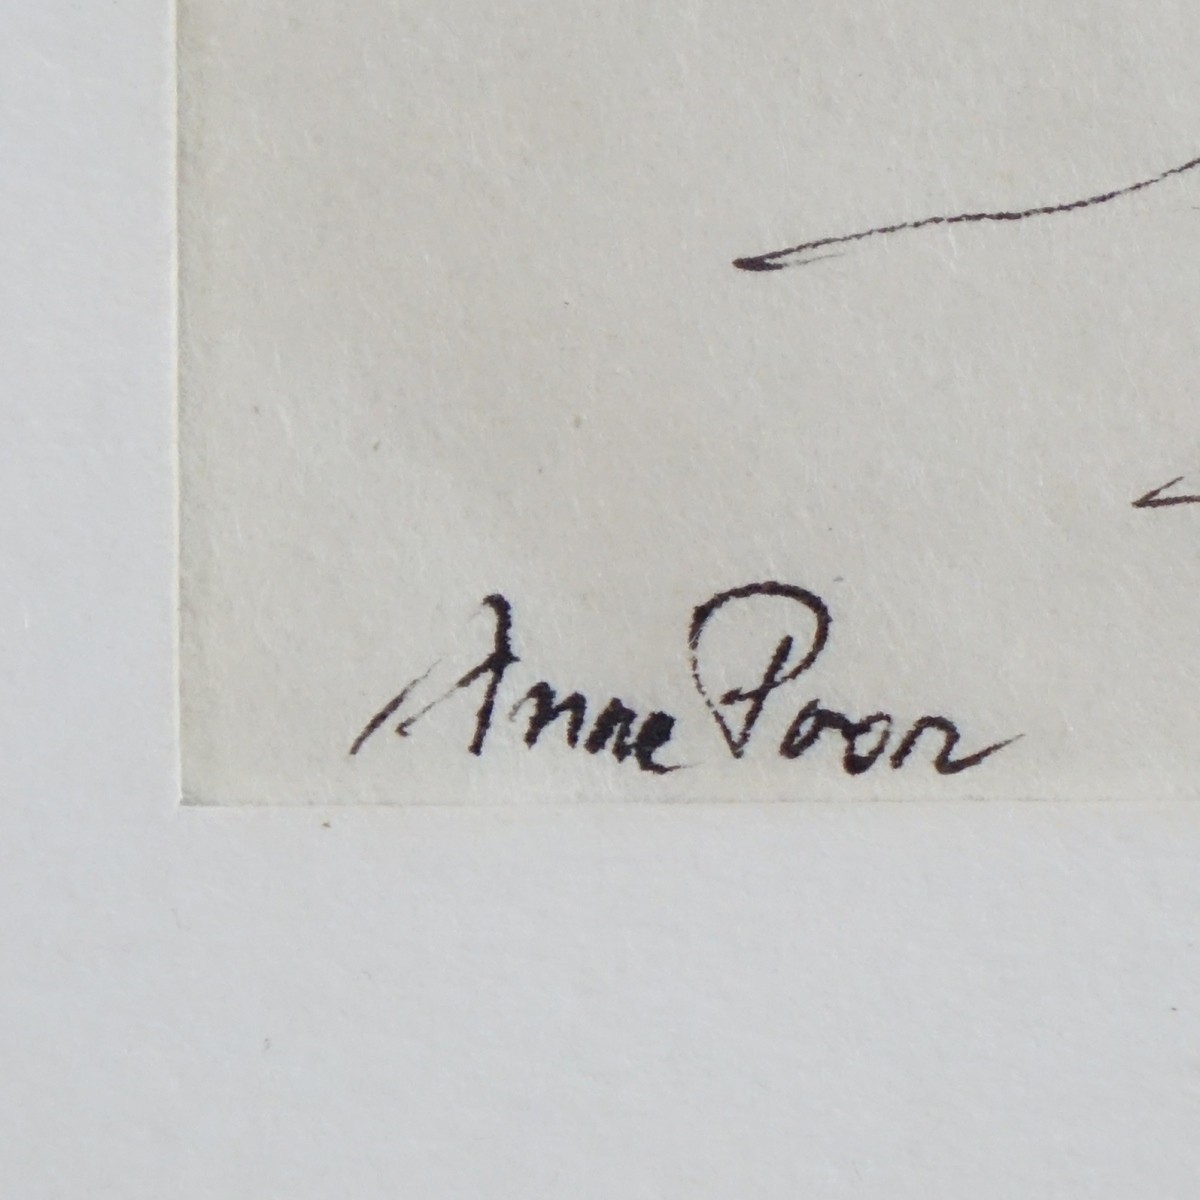 Anne Poor, American (1918 - 2002)